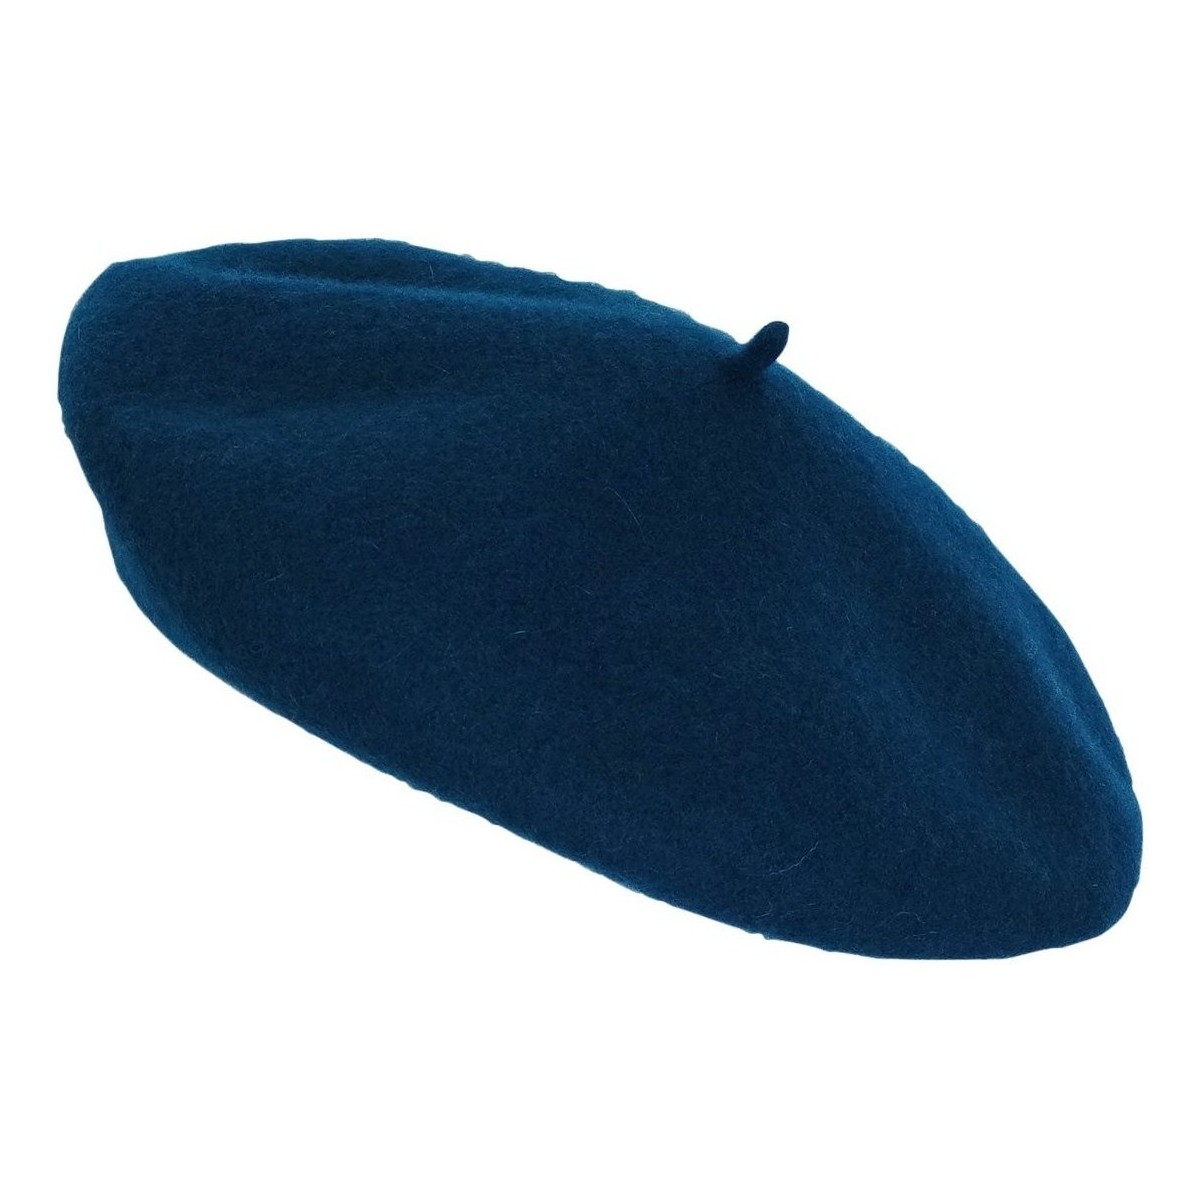 Accessoires textile Femme Chapeaux Chapeau-Tendance Béret 100% laine Bleu